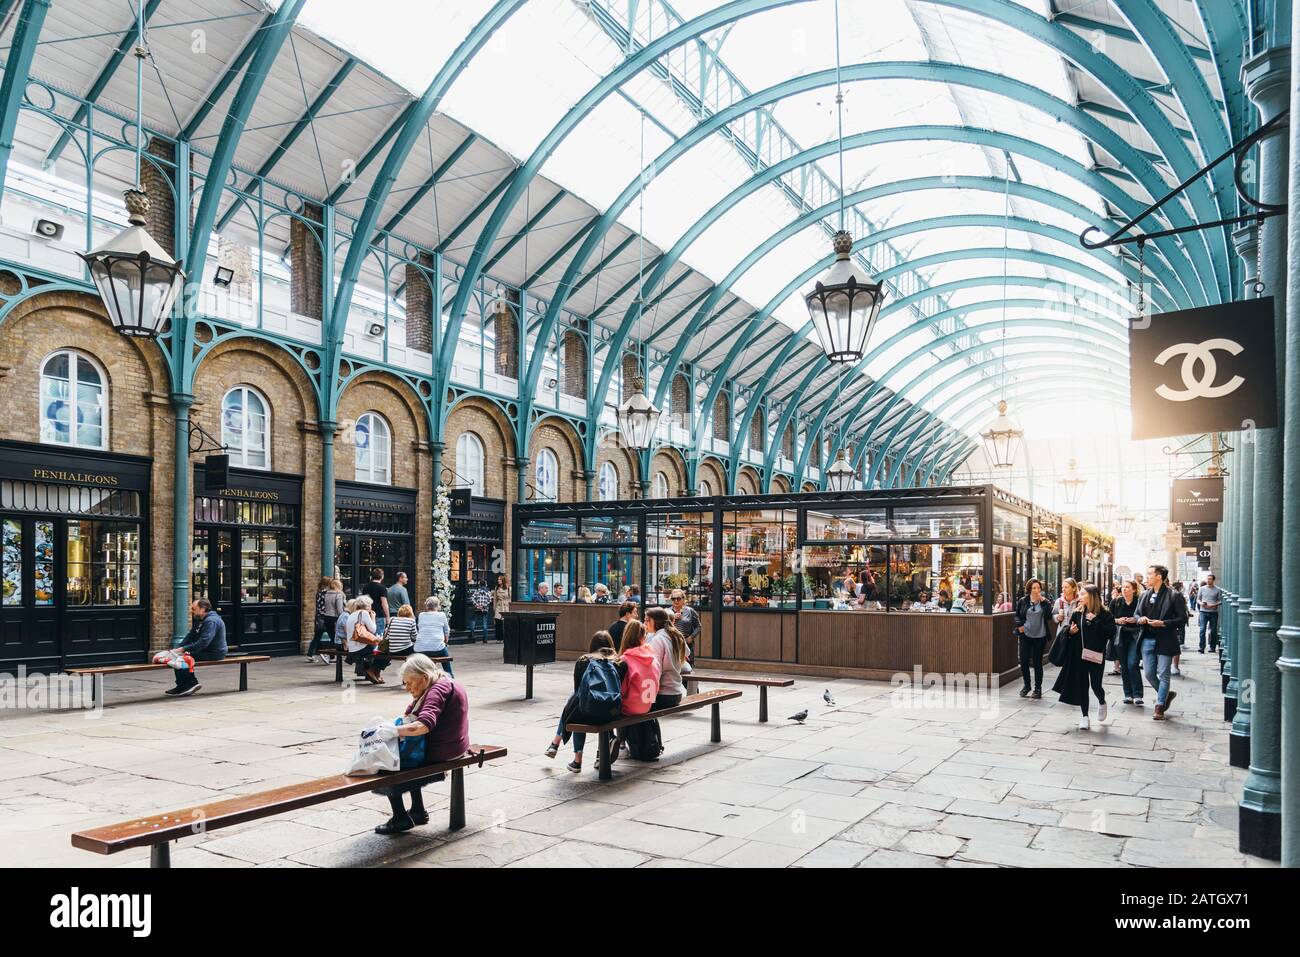 Londres, Royaume-Uni - 15 mai 2019: Les gens qui apprécient dans Covent Garden Market, vue avec soleil. Situé dans le West End de Londres, Covent Garden est réputé f Banque D'Images